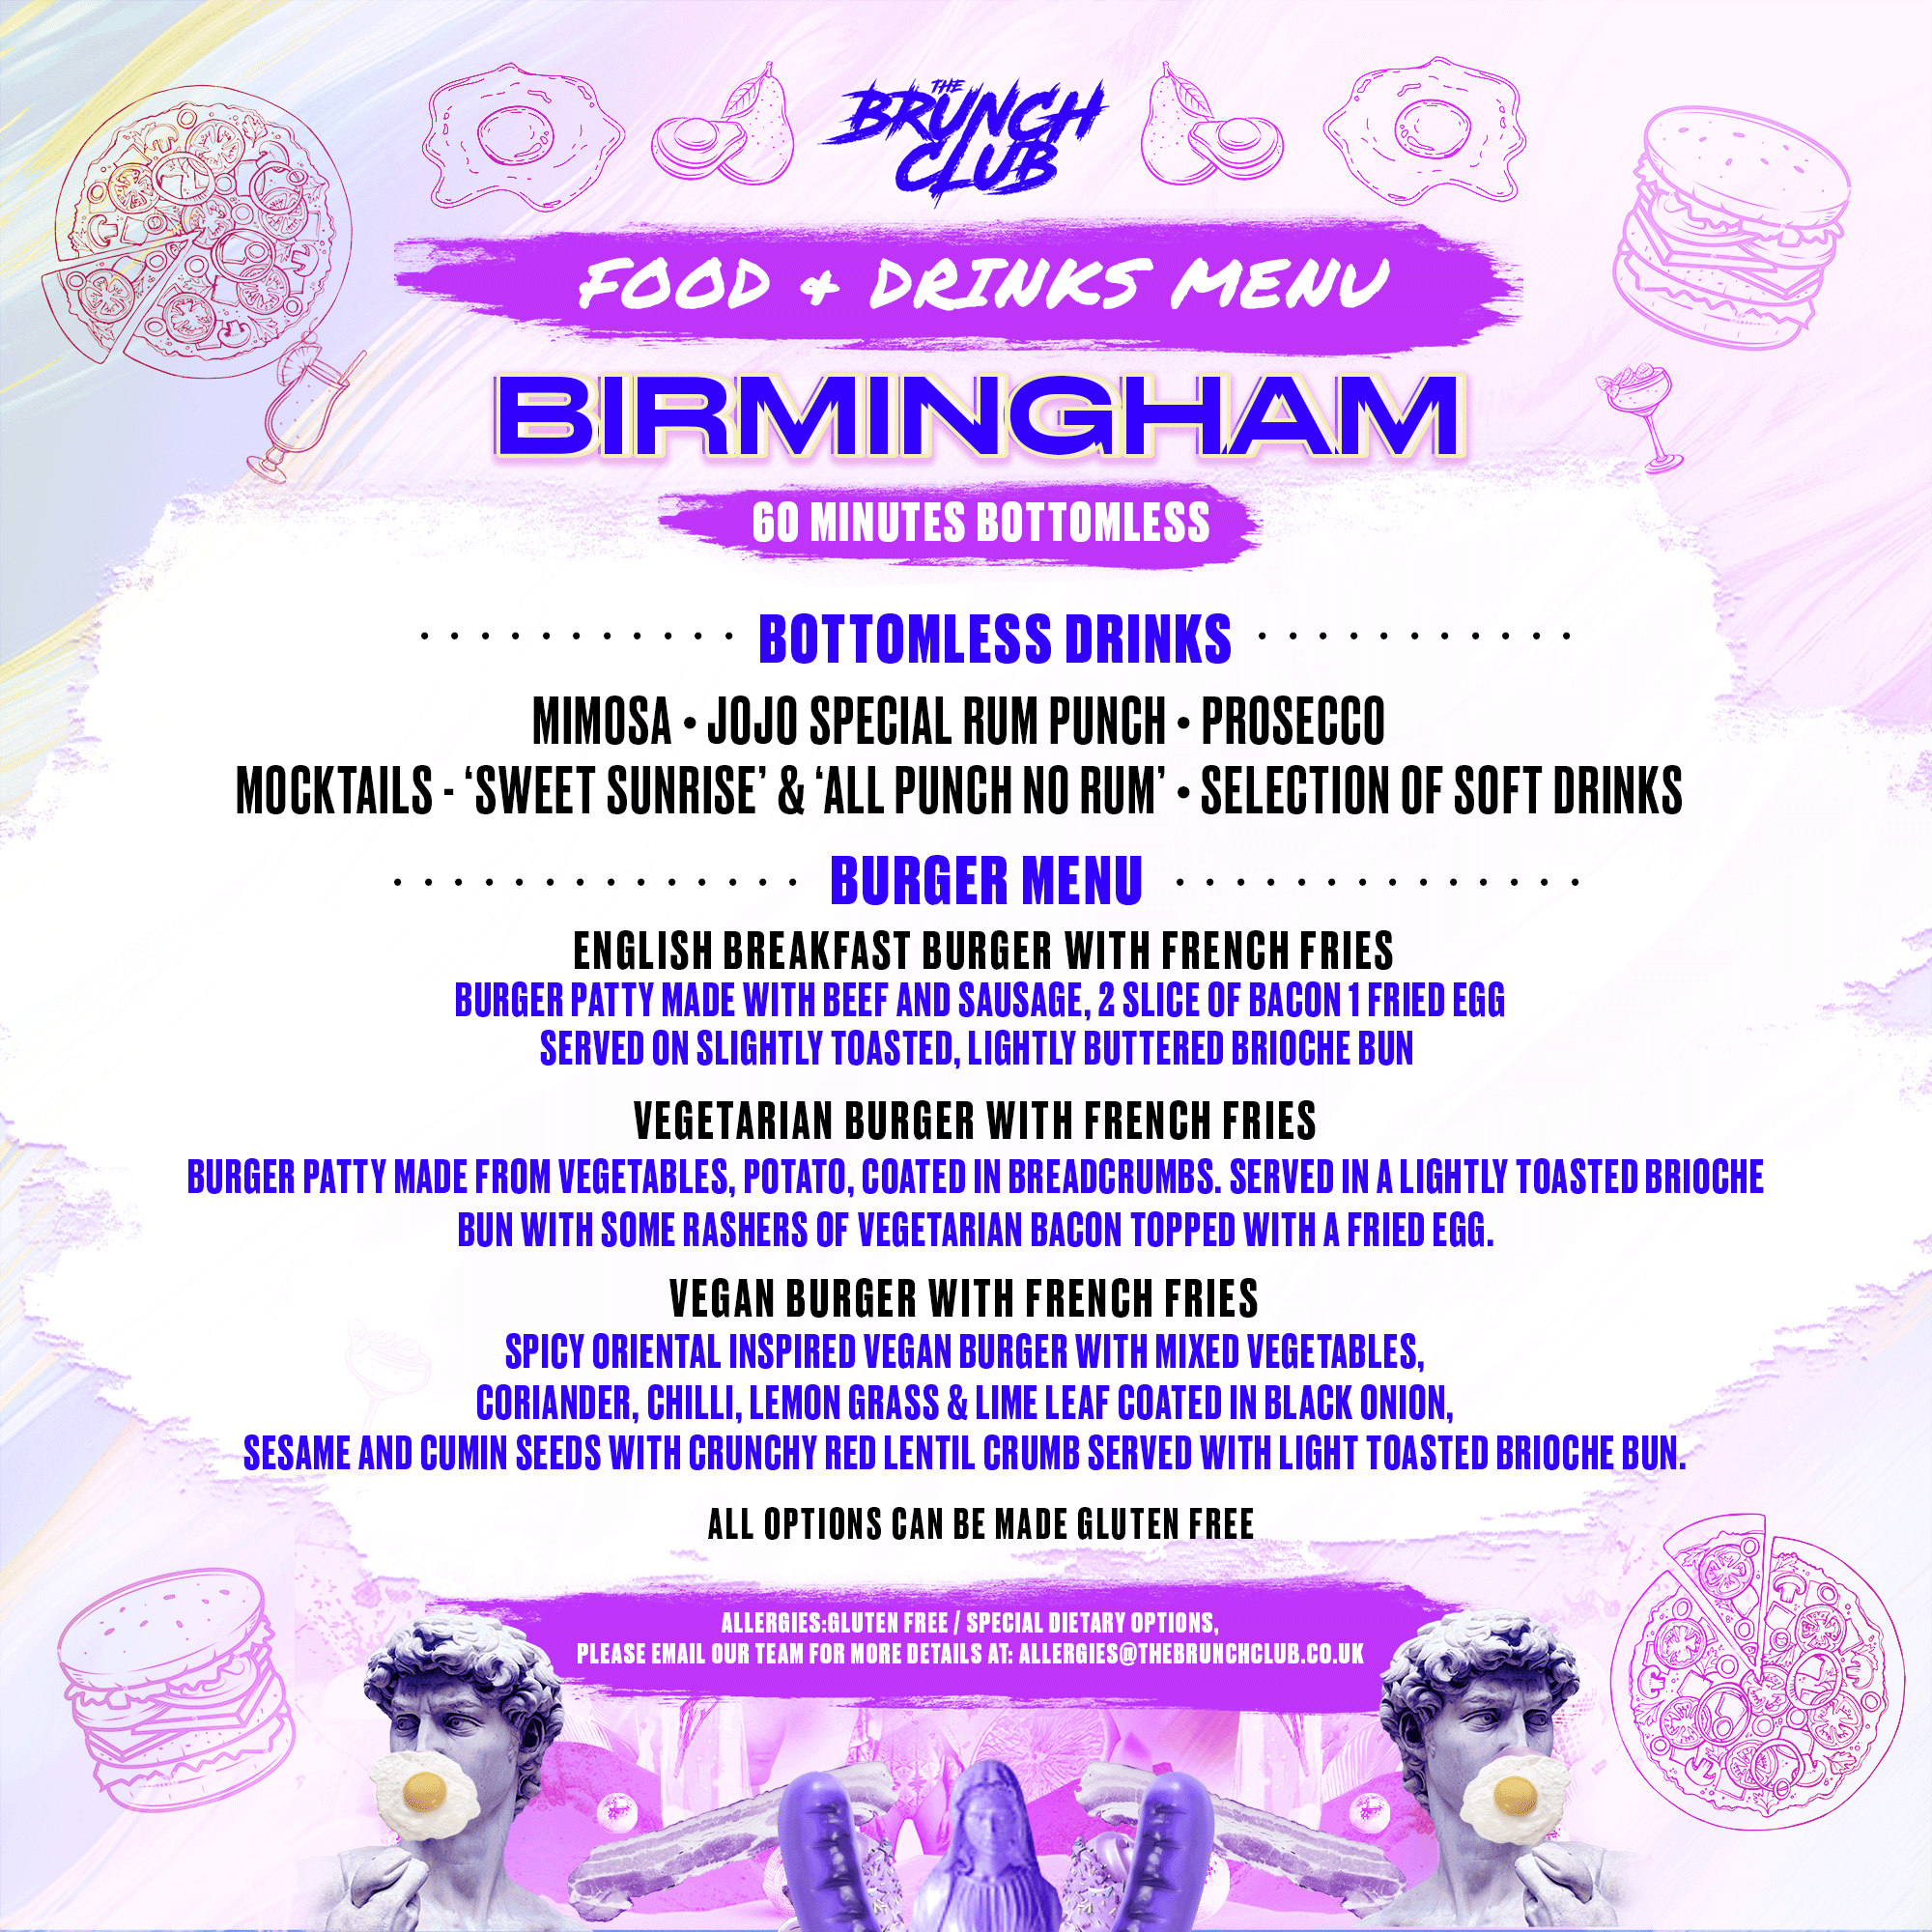 ABBA Drag Bottomless Brunch - Birmingham